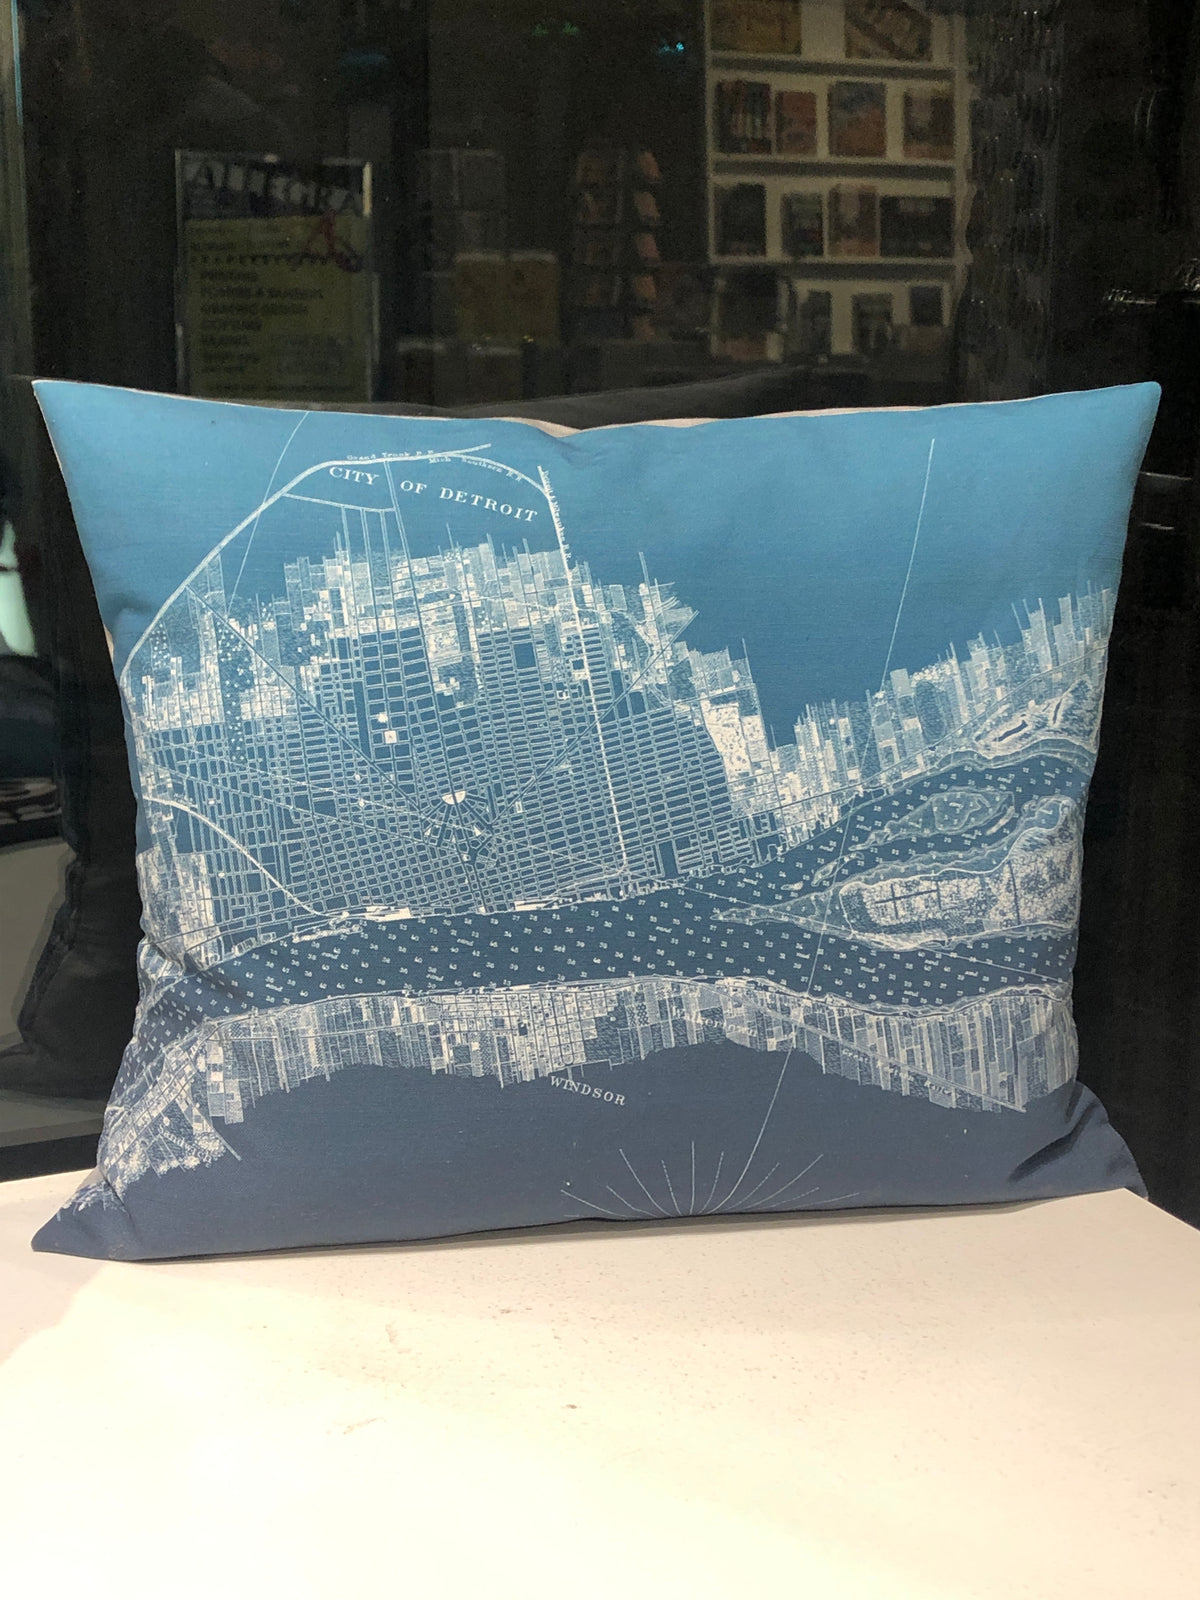 Hand-Made 16" x 13" Teal Detroit + Belle Isle Pillow Pillow   